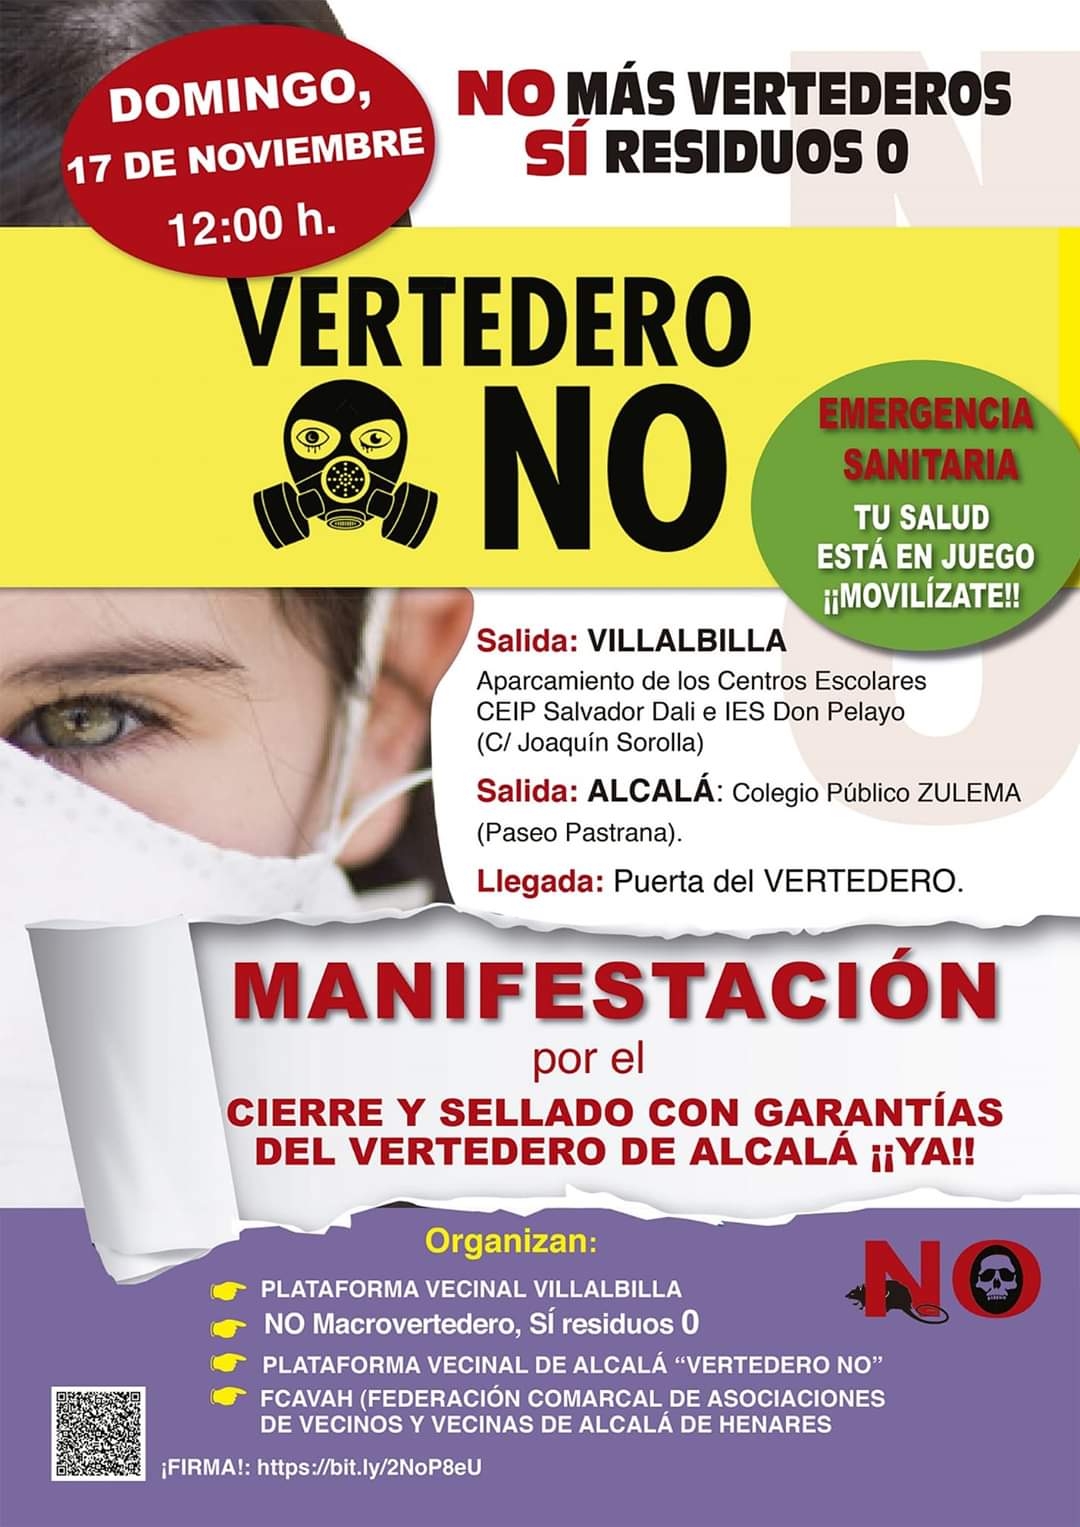 Manifestación por el cierre y sellado del Vertedero de Alcalá de Henares